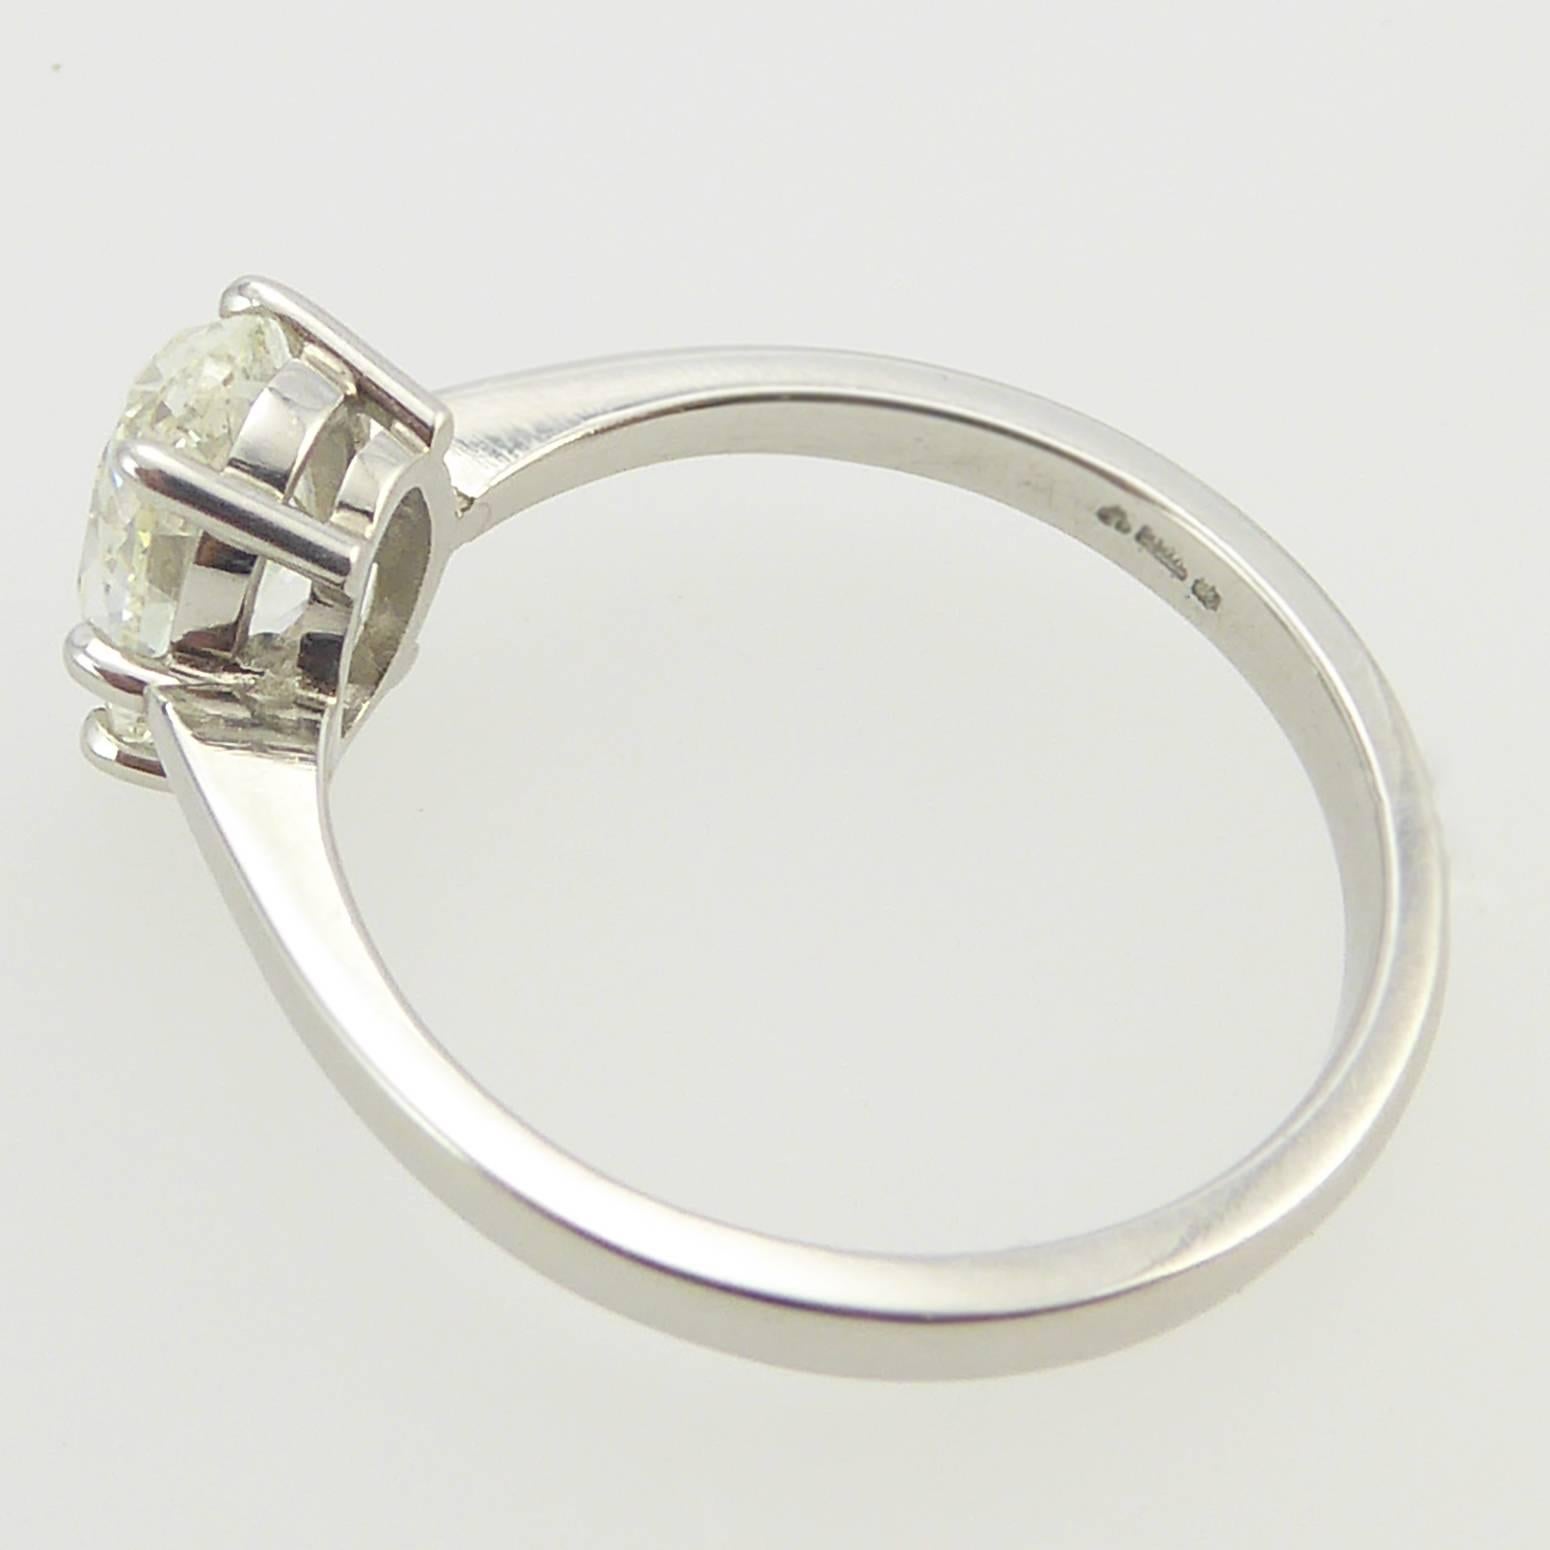 Oval Diamond Engagement Ring, 1.51 Carat Brilliant Cut Solitaire, Platinum 1